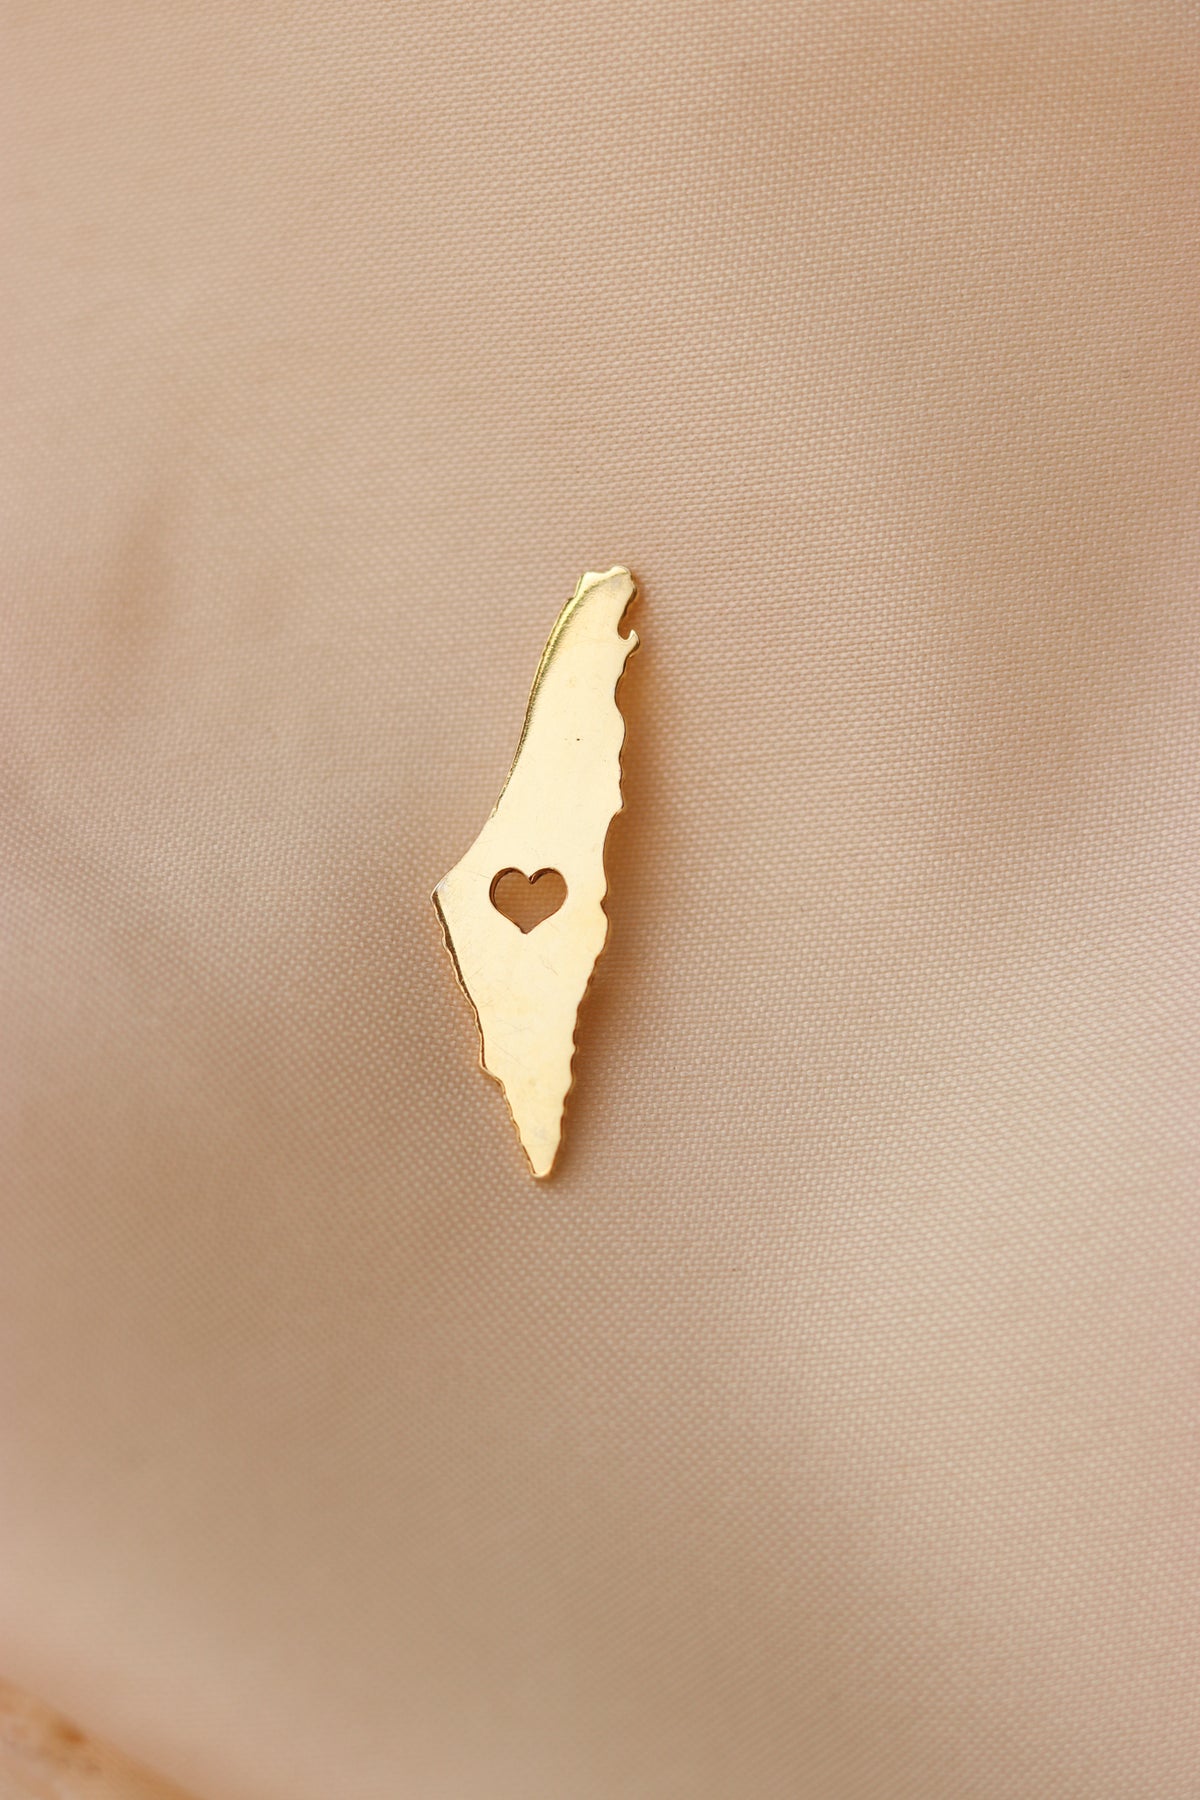 Palestine heart map pin